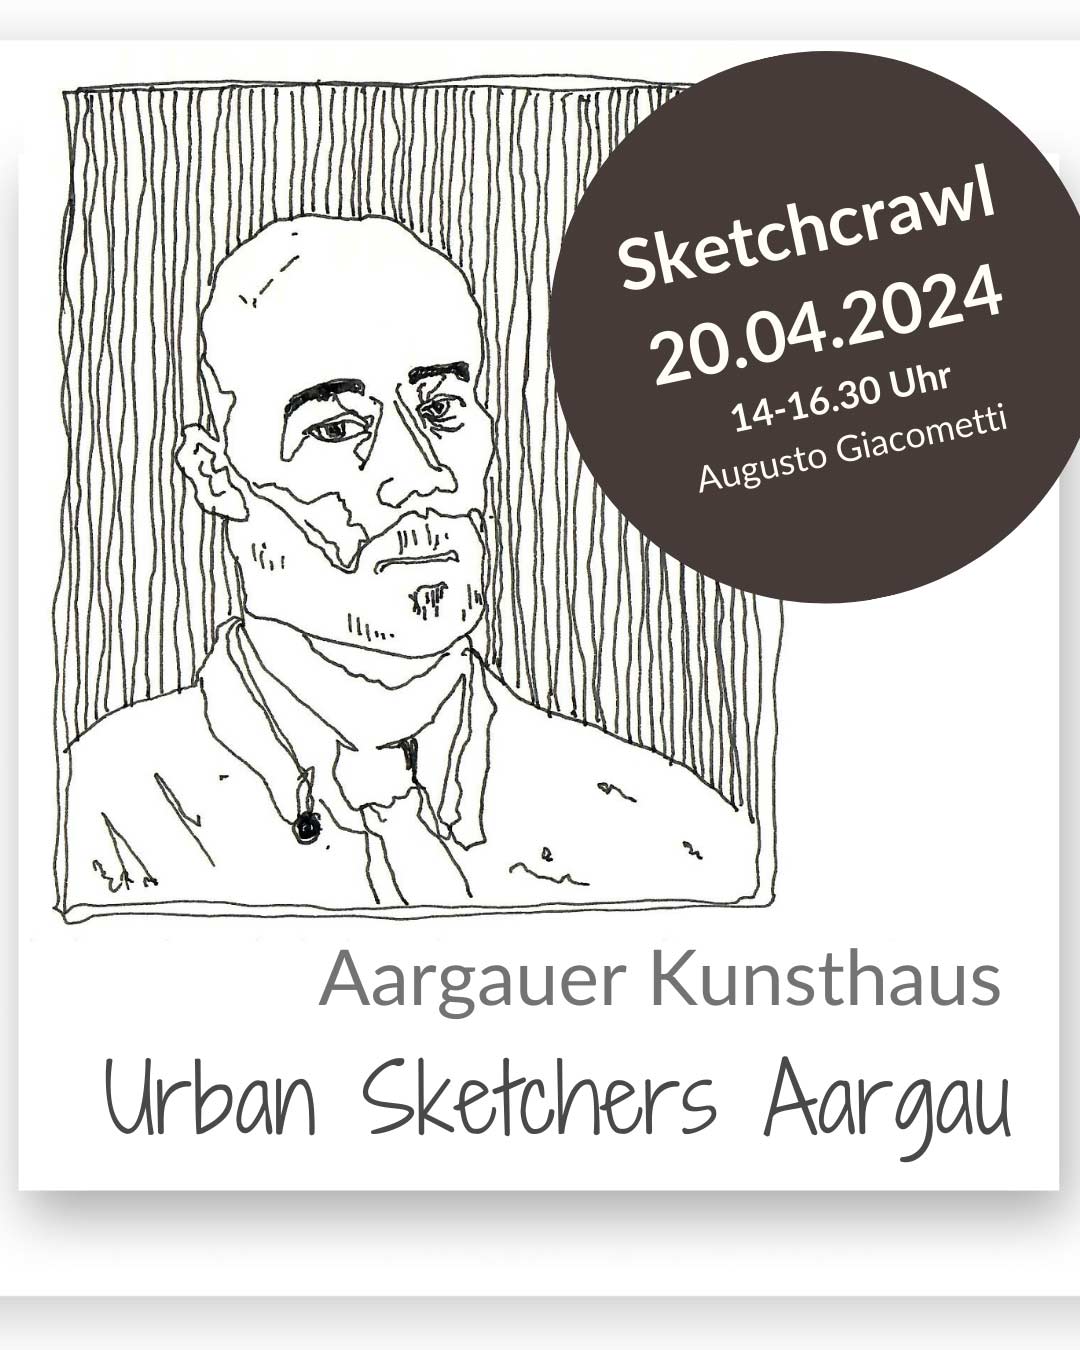 Augusto Giacometti, Sketchcrawl Aargauer Kunsthaus, urbansketchers aargau